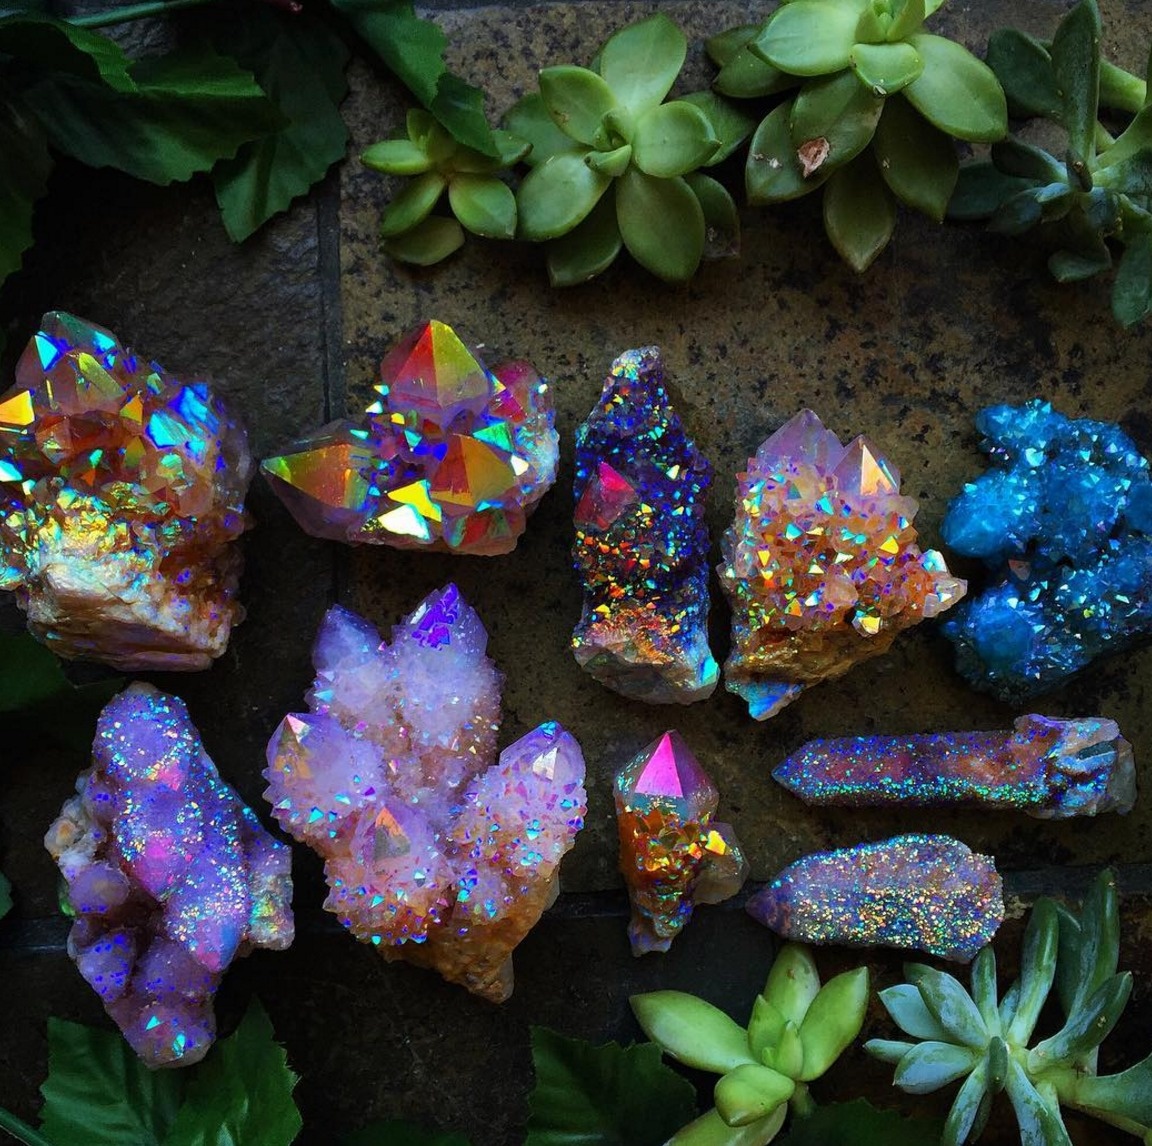 The beautiful spirit quartz stones.